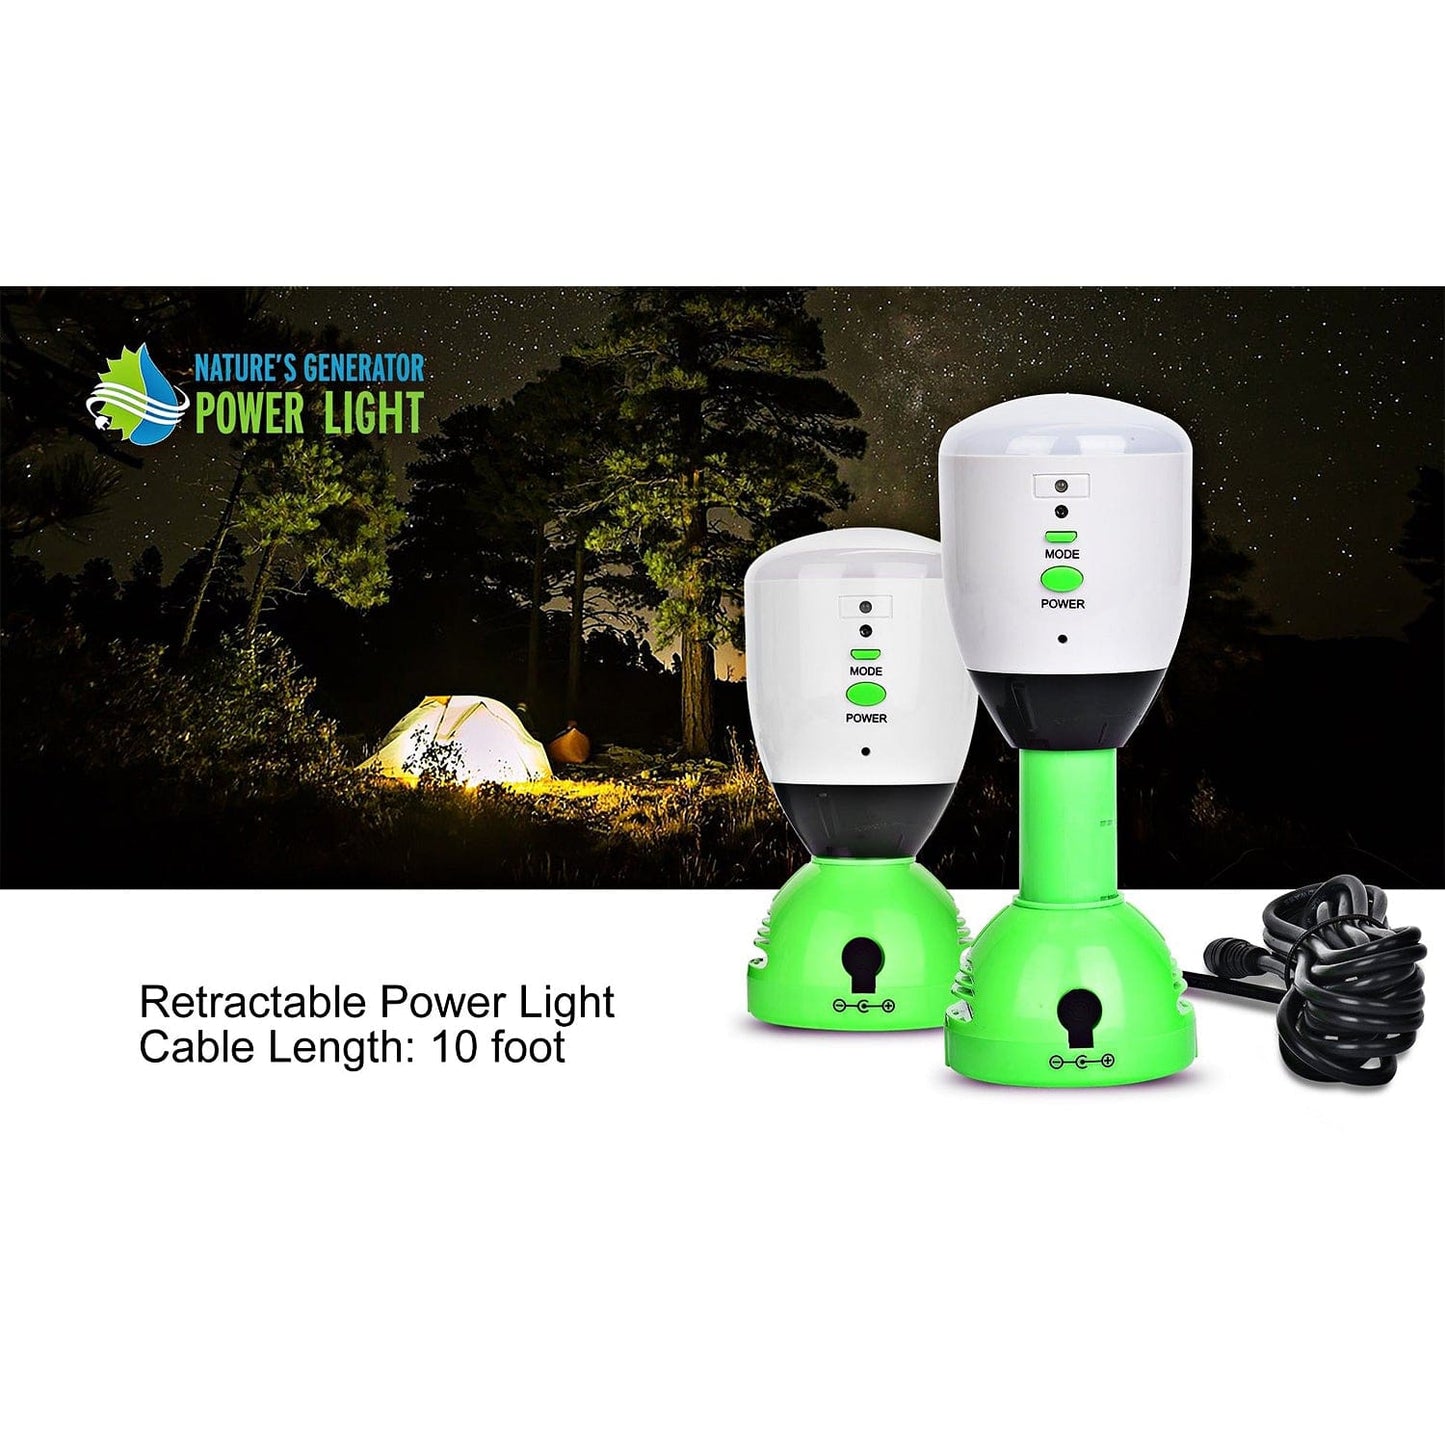 Nature's Generator Power Light